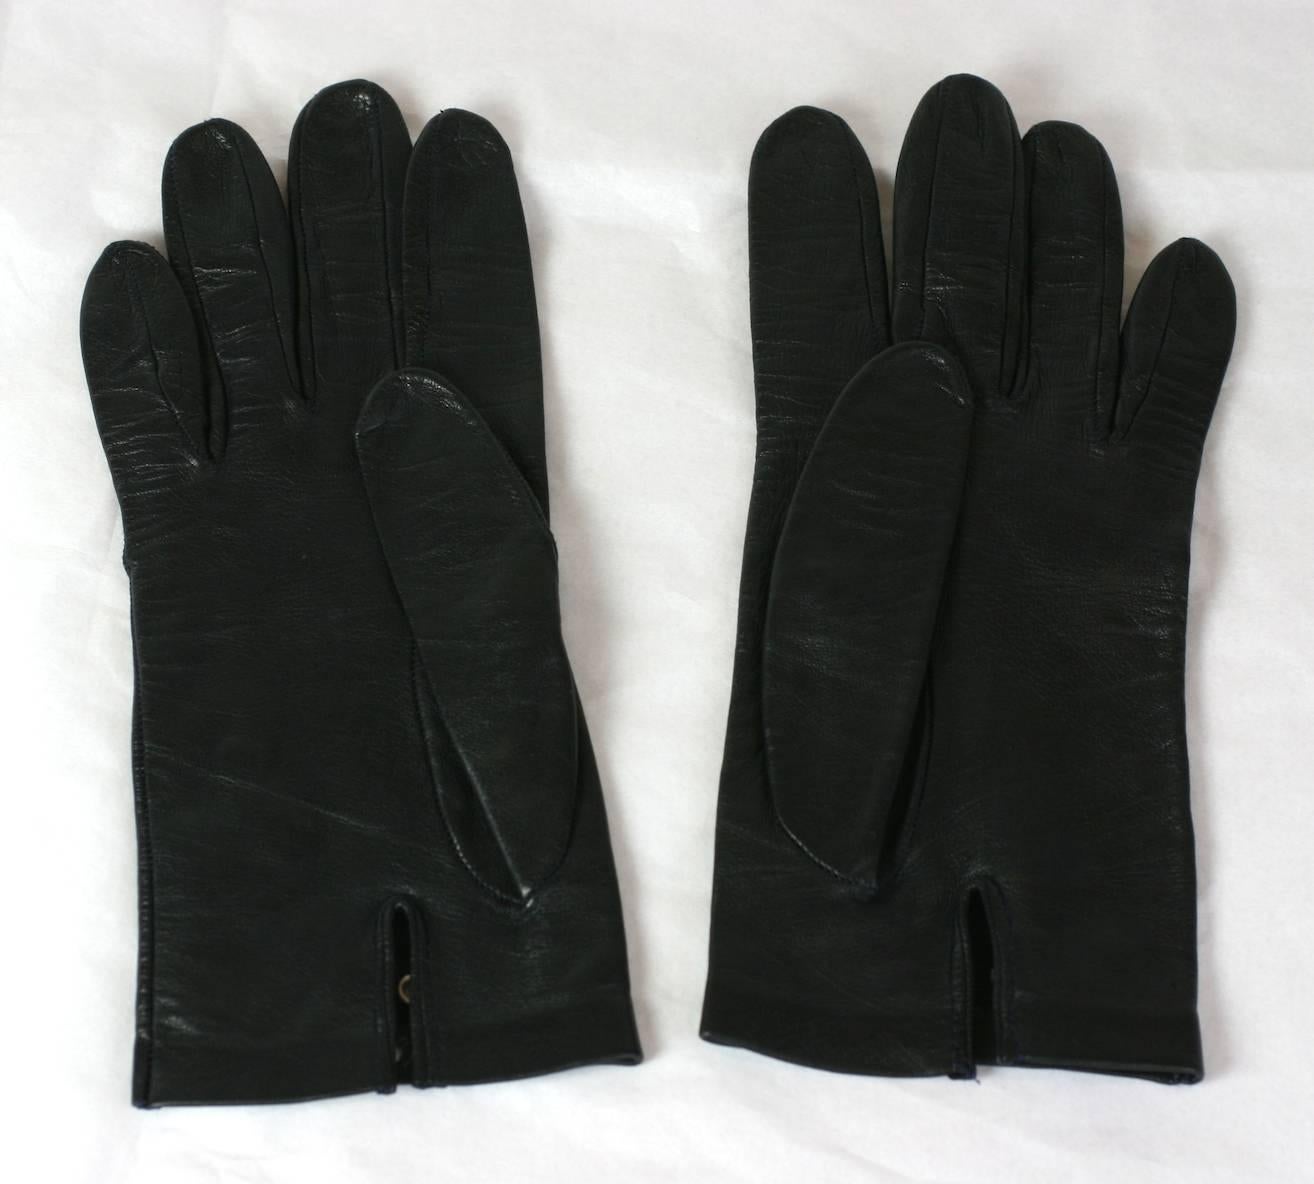 grommet gloves